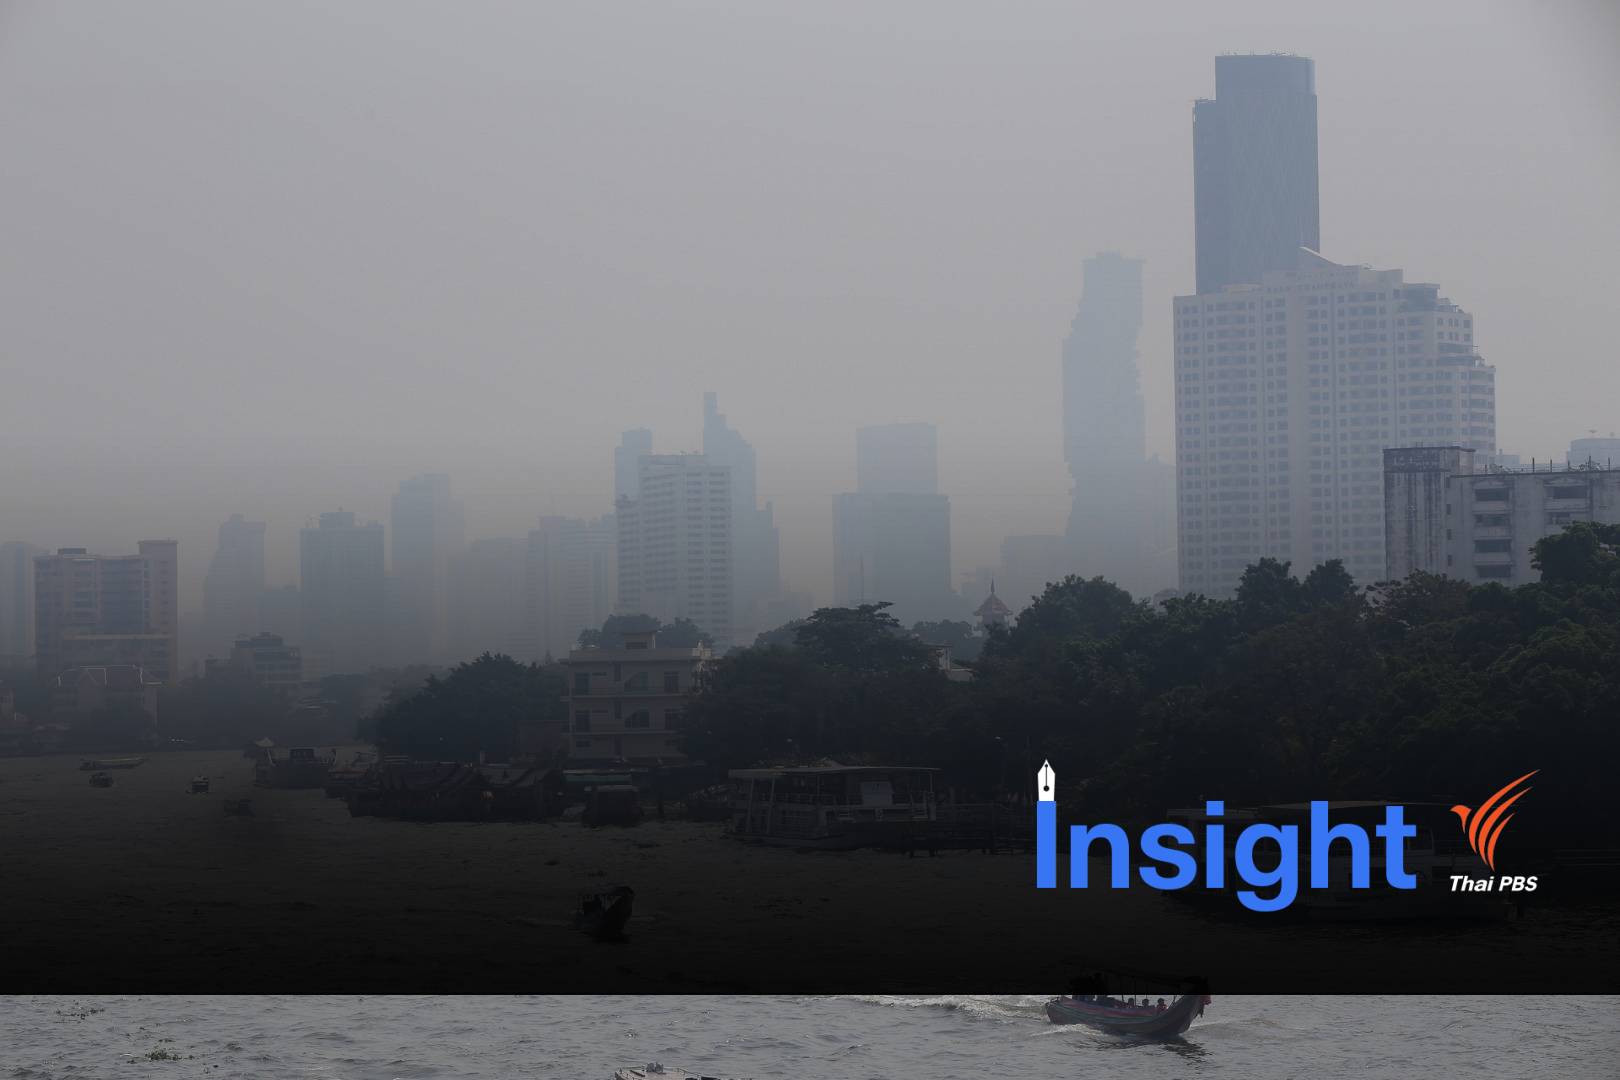 แก้ฝุ่น PM 2.5 ไม่ง่าย สิ่งแวดล้อม สุขภาพ สวนทางเศรษฐกิจเติบโต 